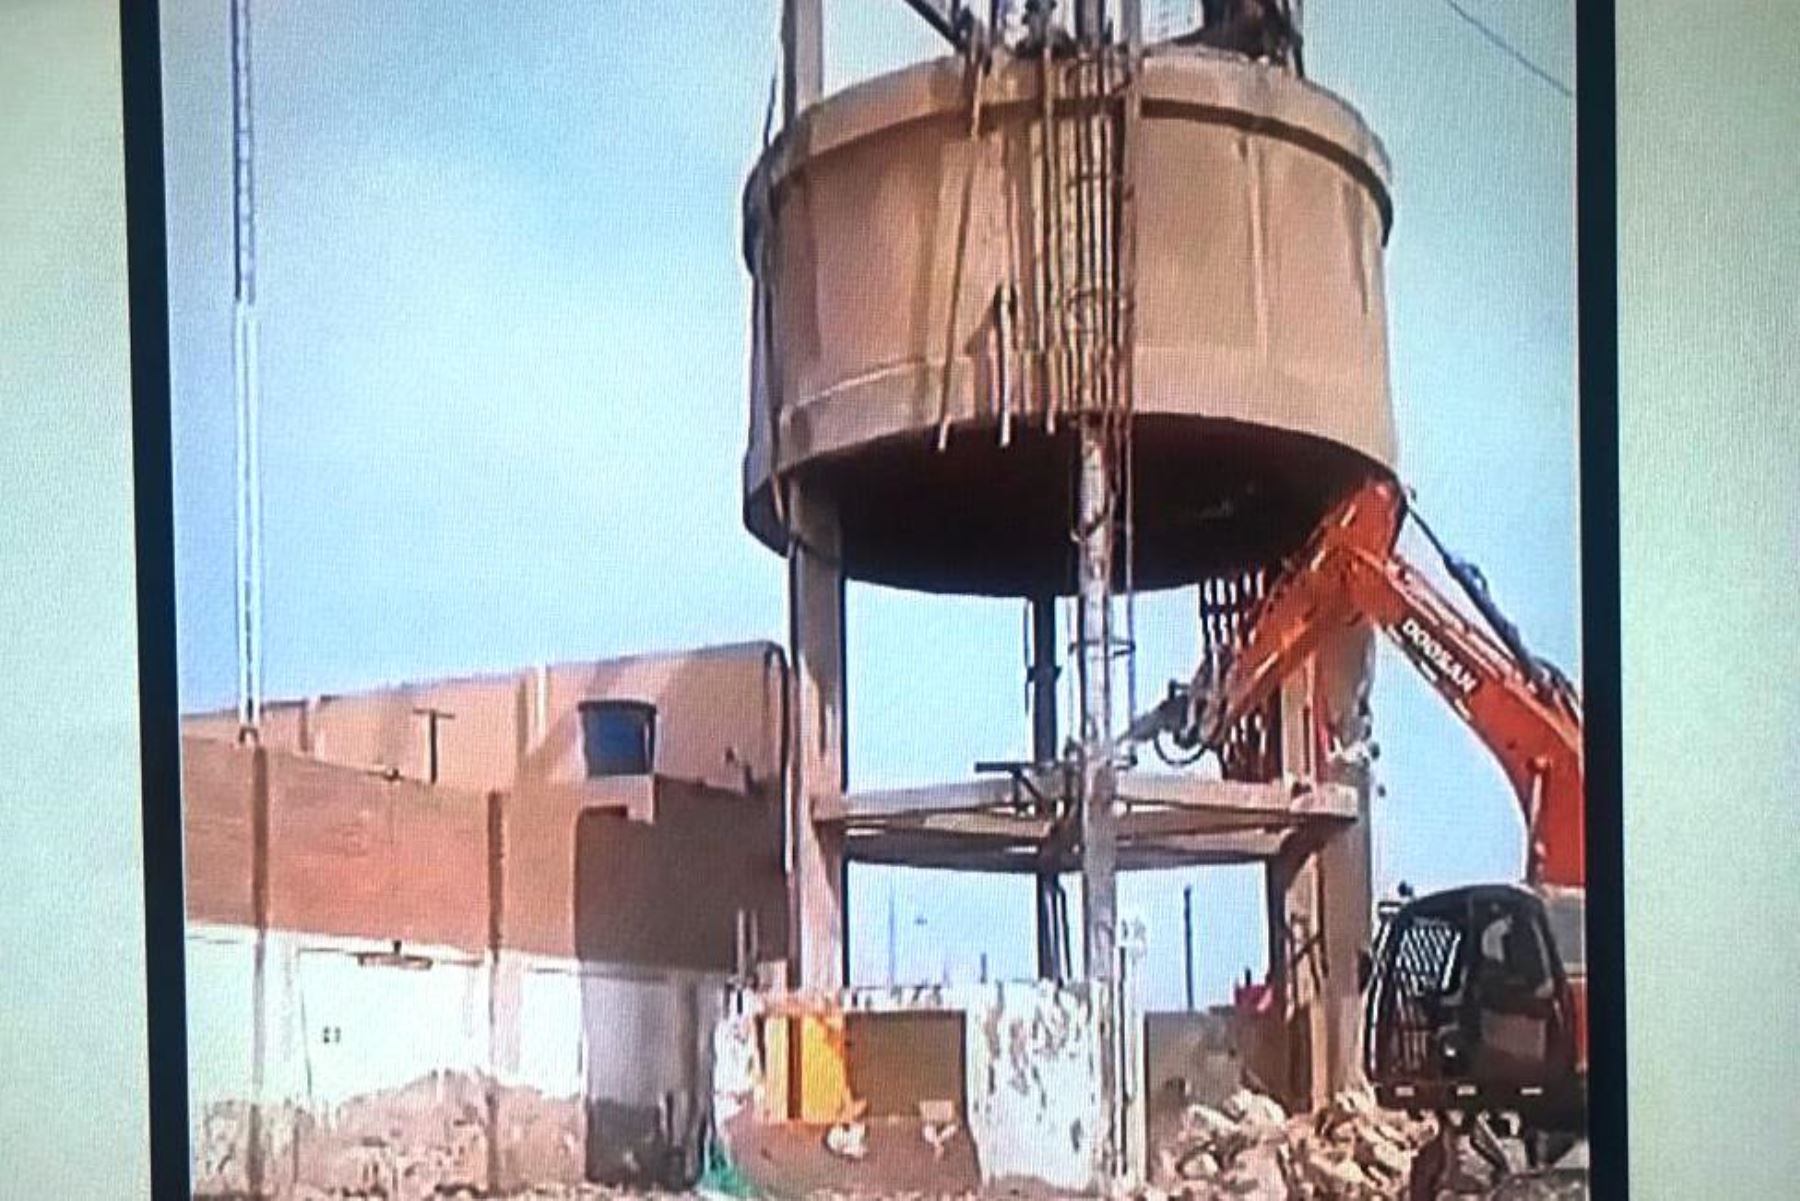 Operario quedó atrapado al caer tanque aéreo en una fábrica que está siendo demolida. Foto: ANDINA/capturaTV